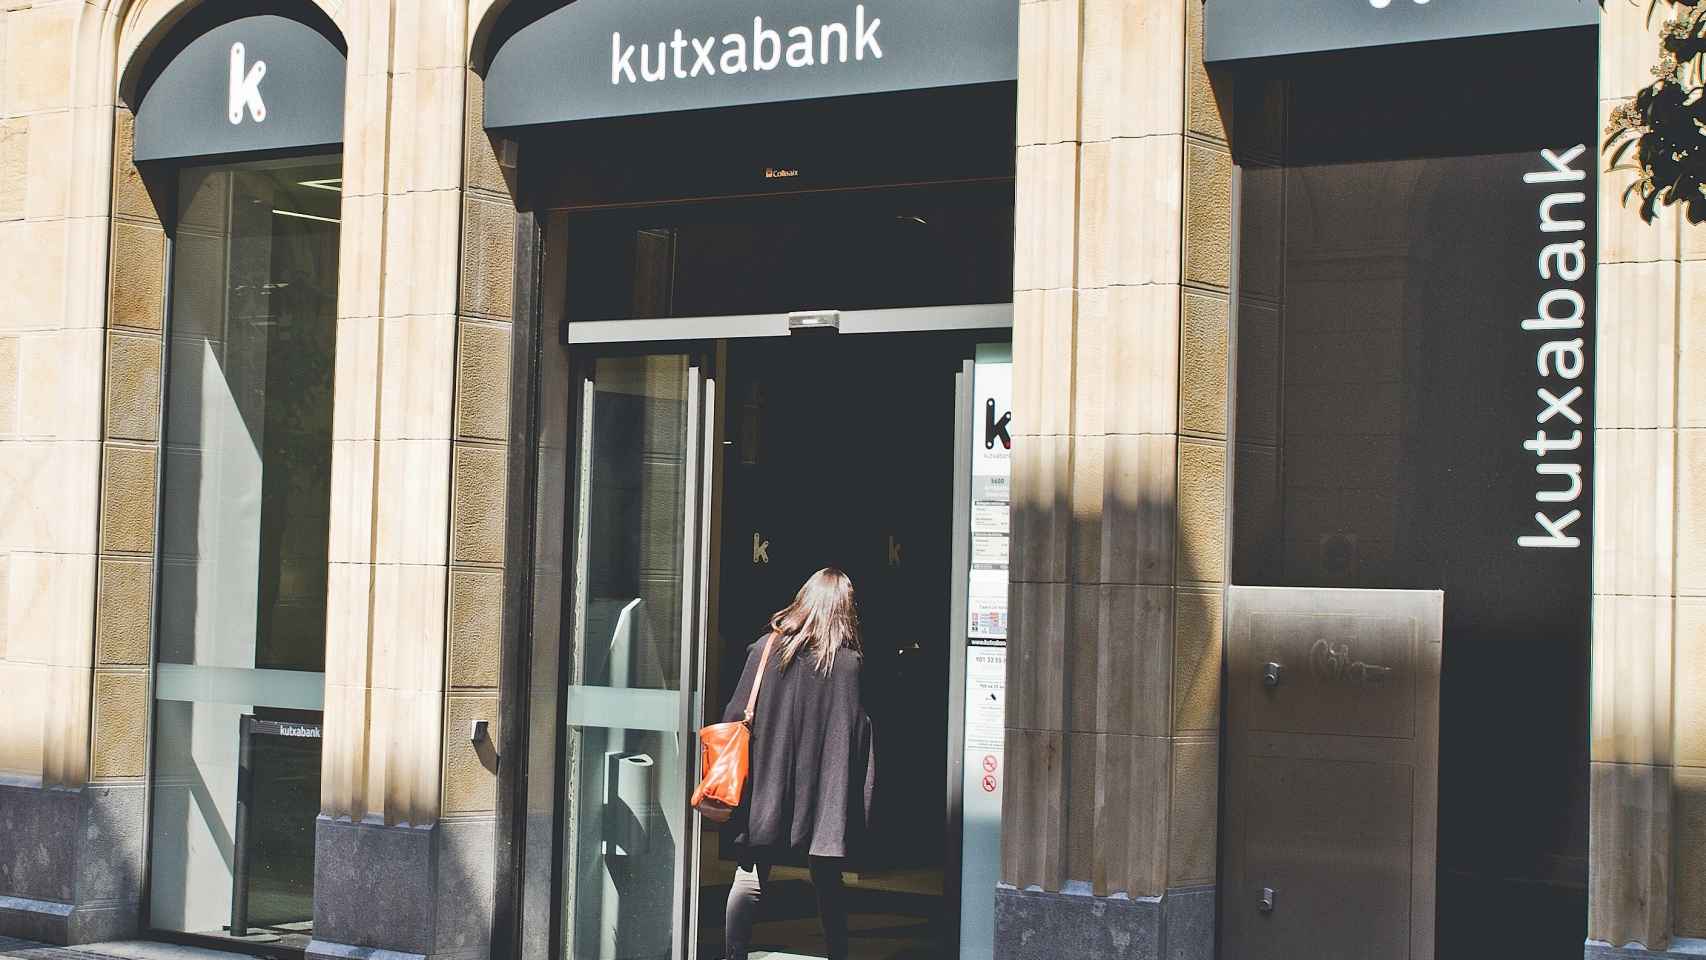 Oficina de Kutxabank / KUTXABANK